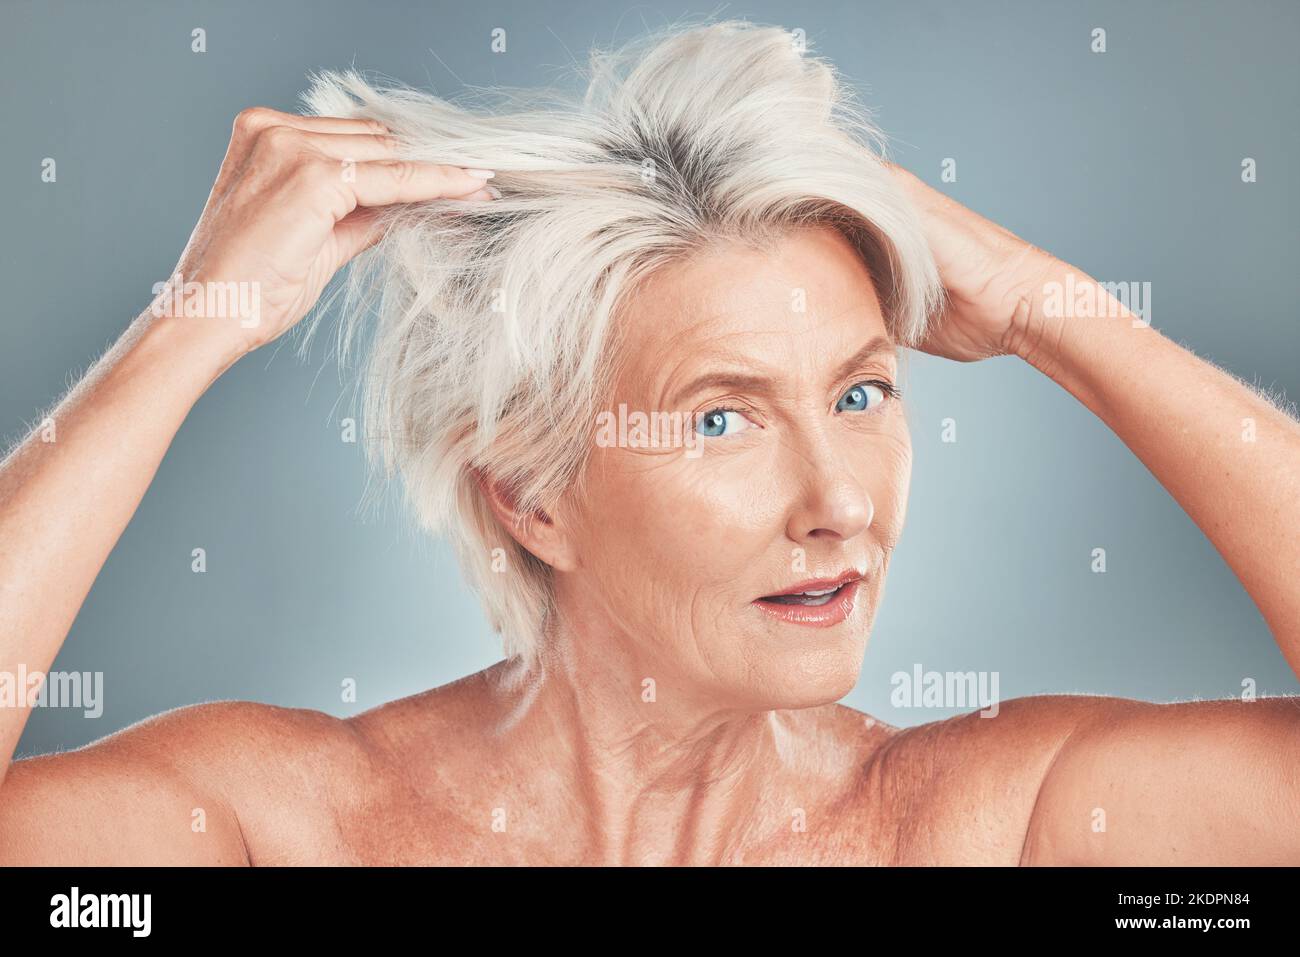 Chaotische Haare, Frau und Senior-Modell auf der Suche nach Haarpflege, Wellness und Frisur Salon geschnitten. Porträt einer älteren Person aus Amsterdam mit Bettkopf Stockfoto